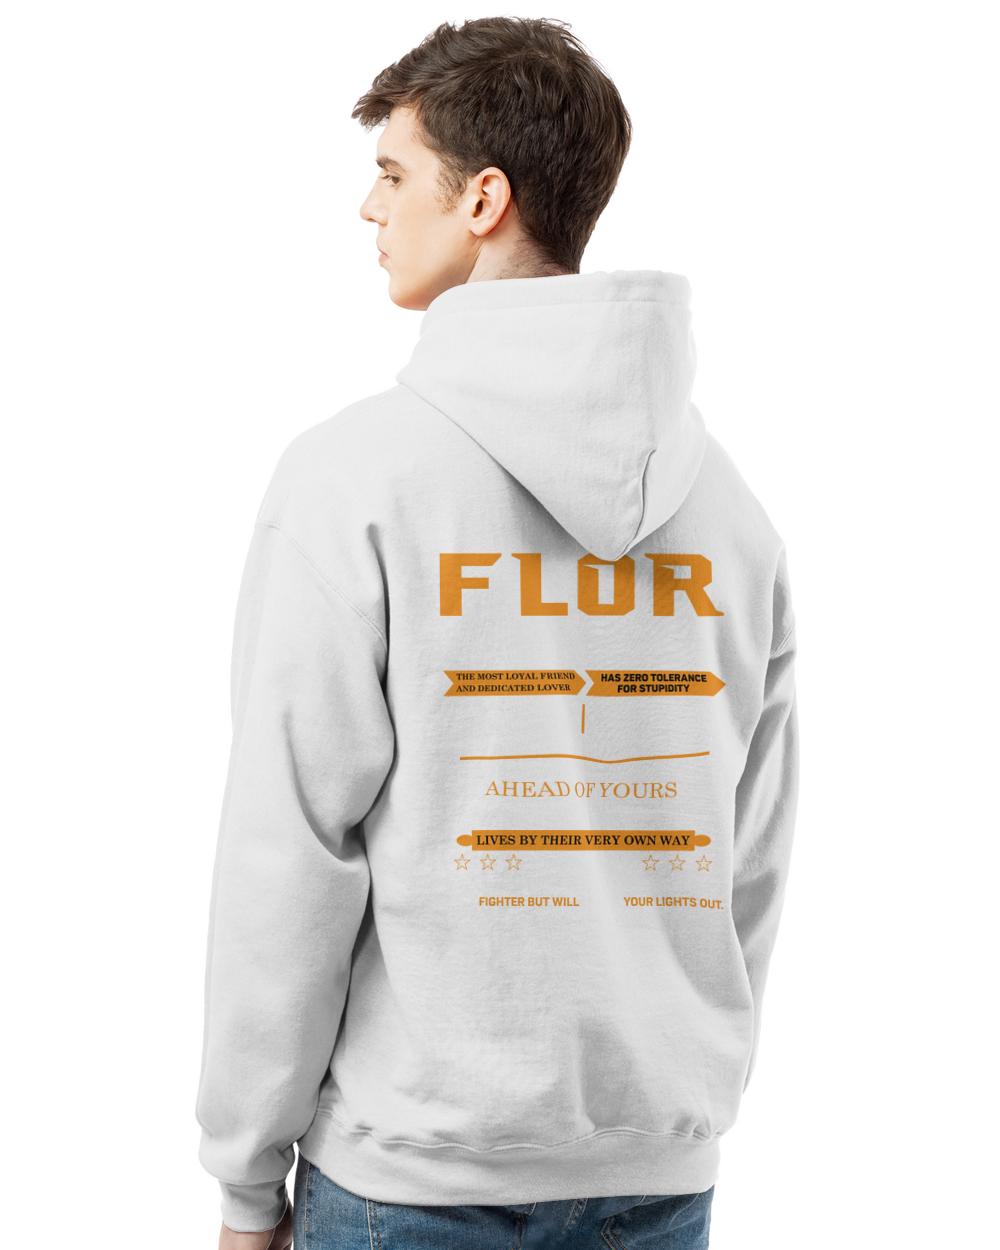 FLOR-13K-N1-01